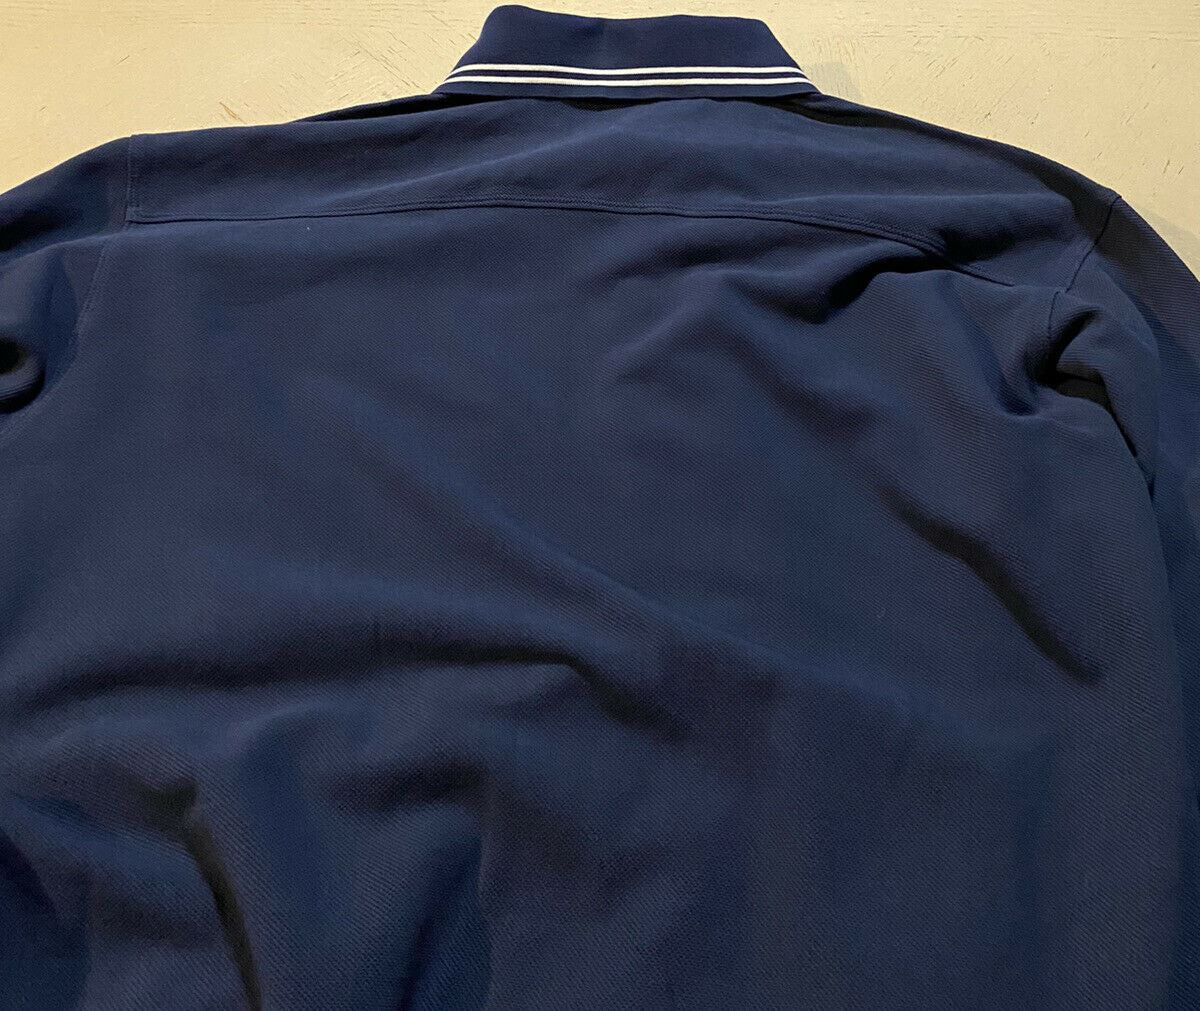 Neu mit Etikett: Gucci Herren-Langarm-Poloshirt in Übergröße, Königsblau, Größe S, Italien